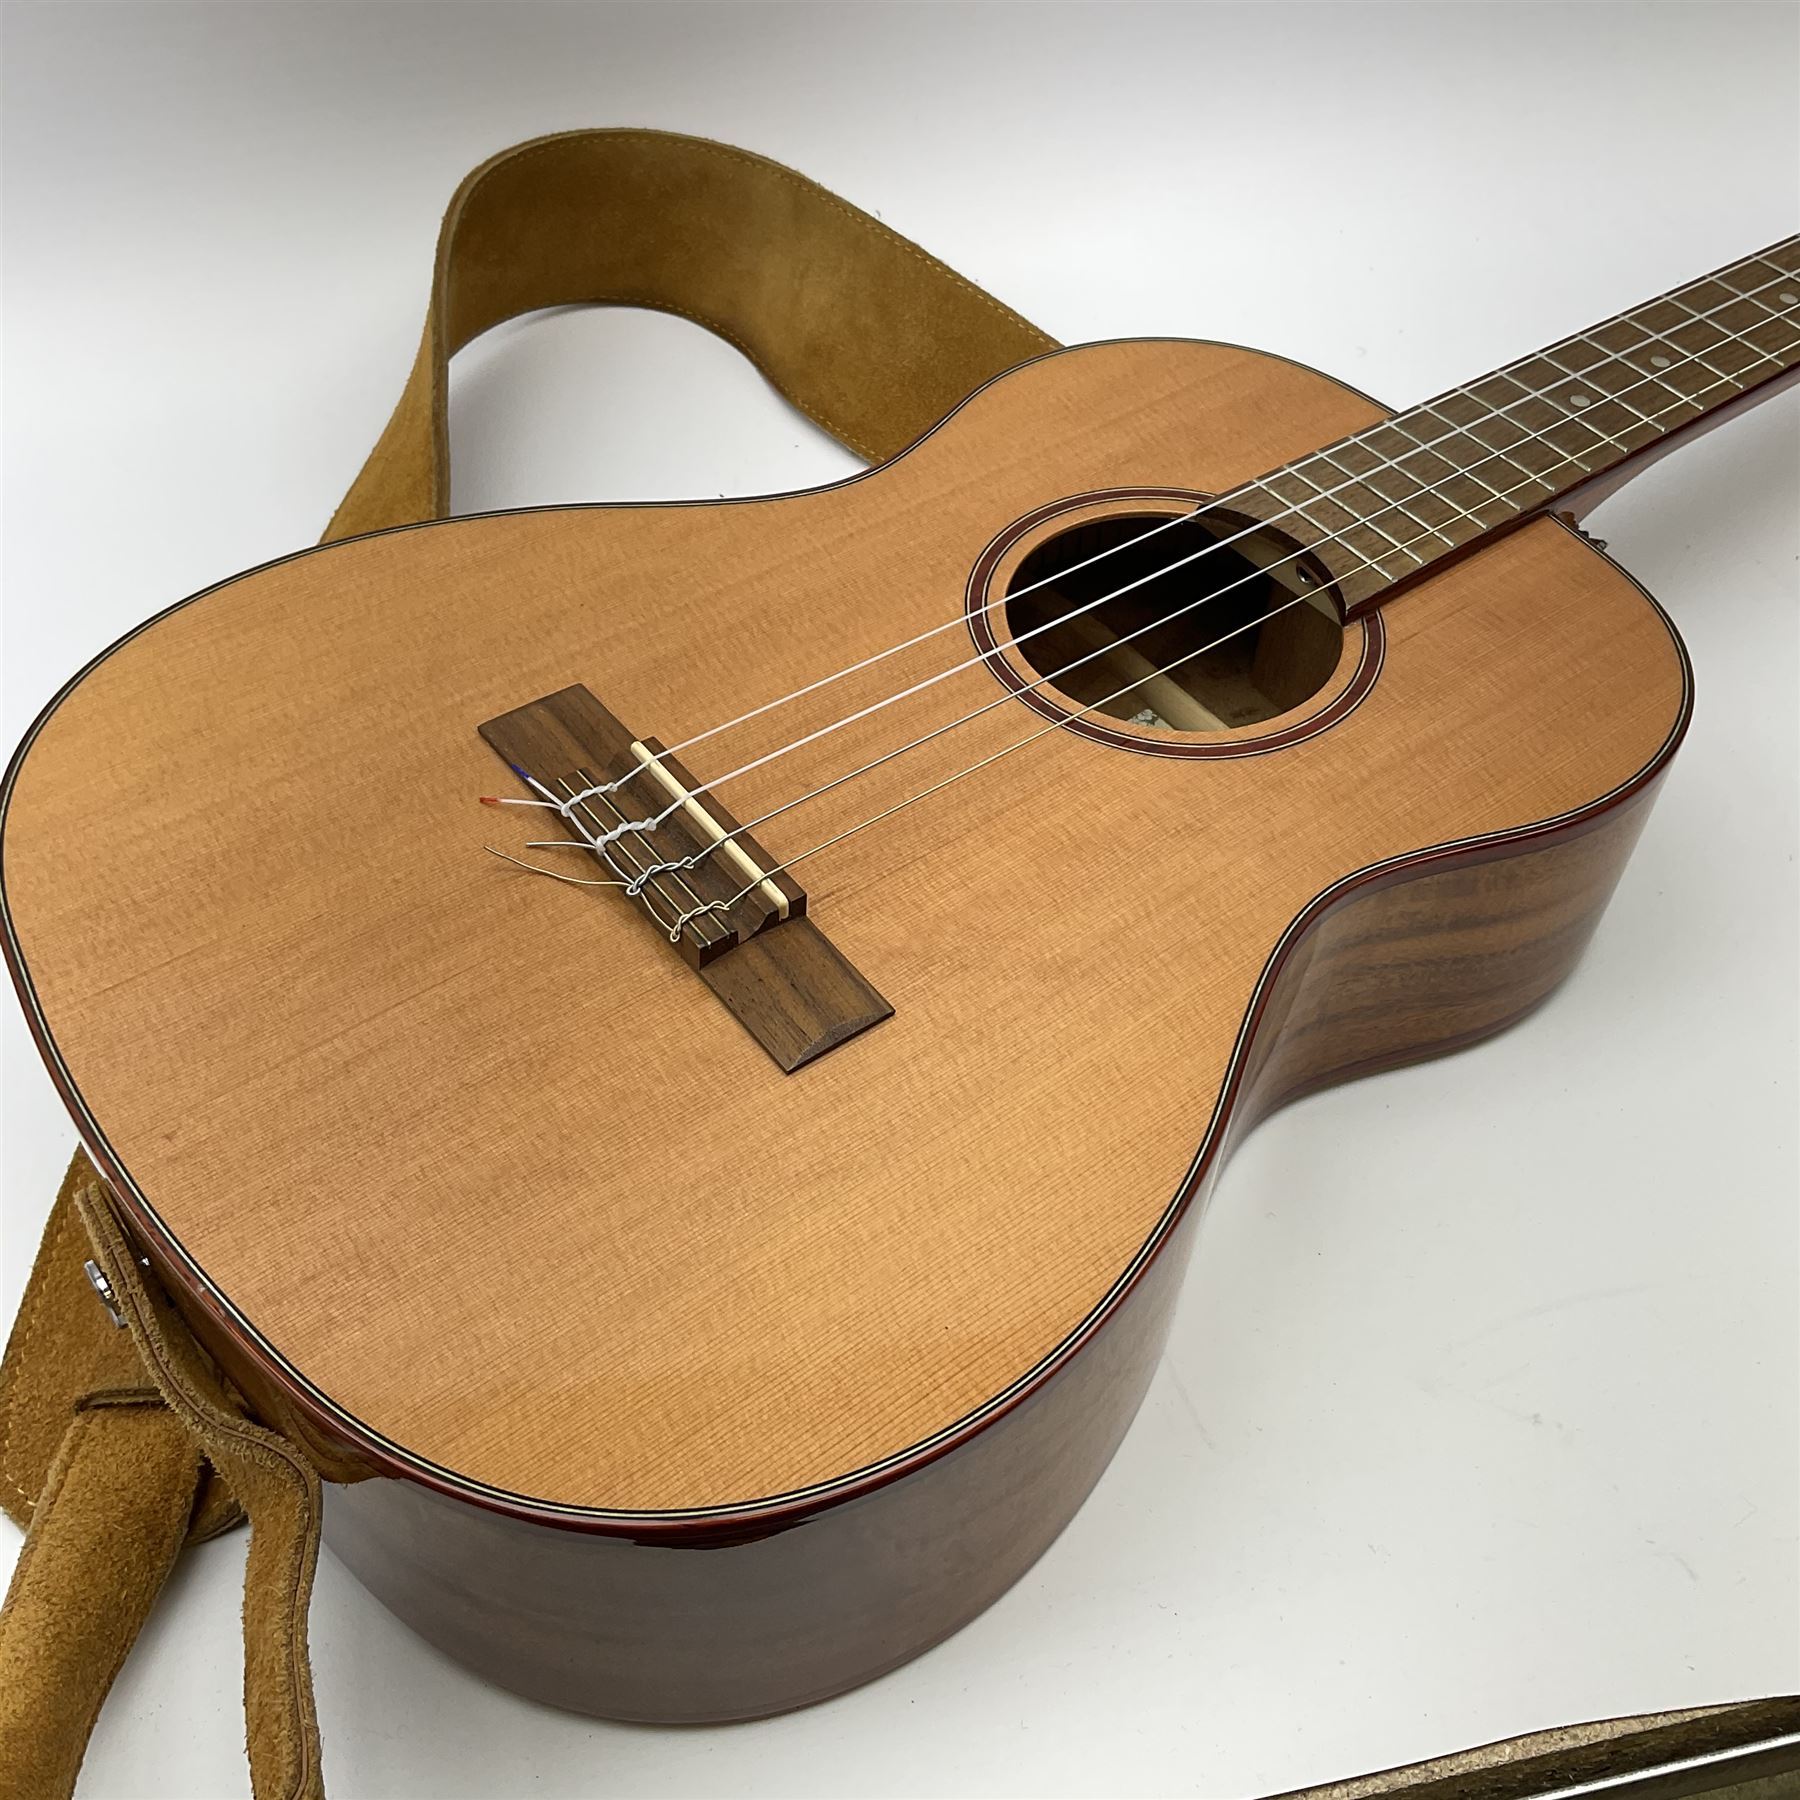 Modern Kala ukulele with acacia back and sides - Image 8 of 12